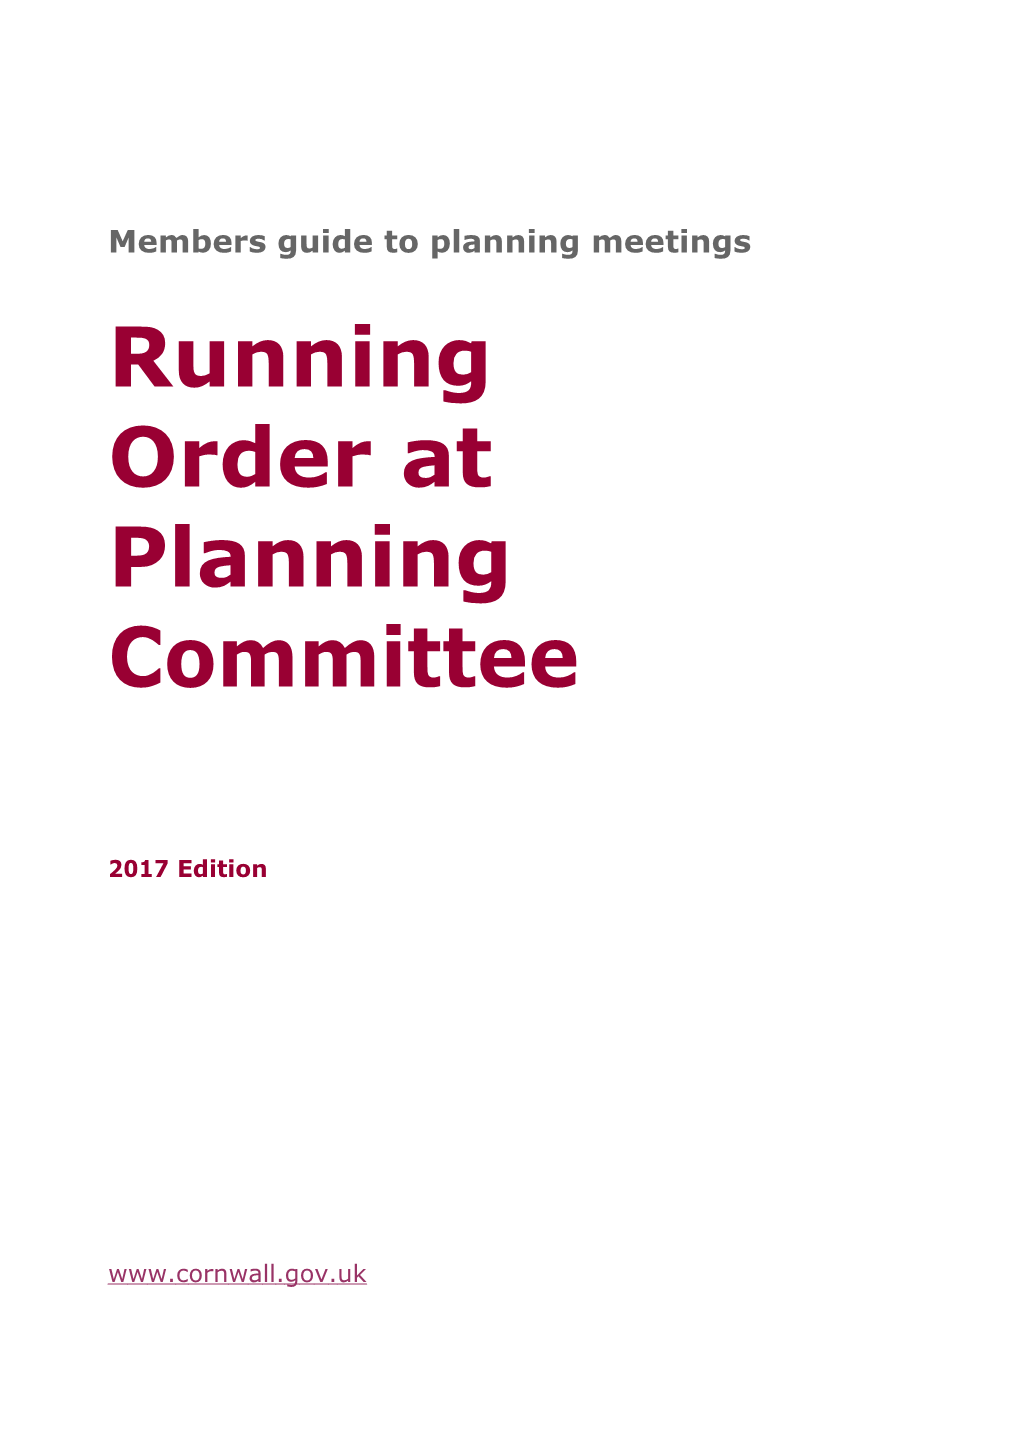 Members Guide to Planning Meetings